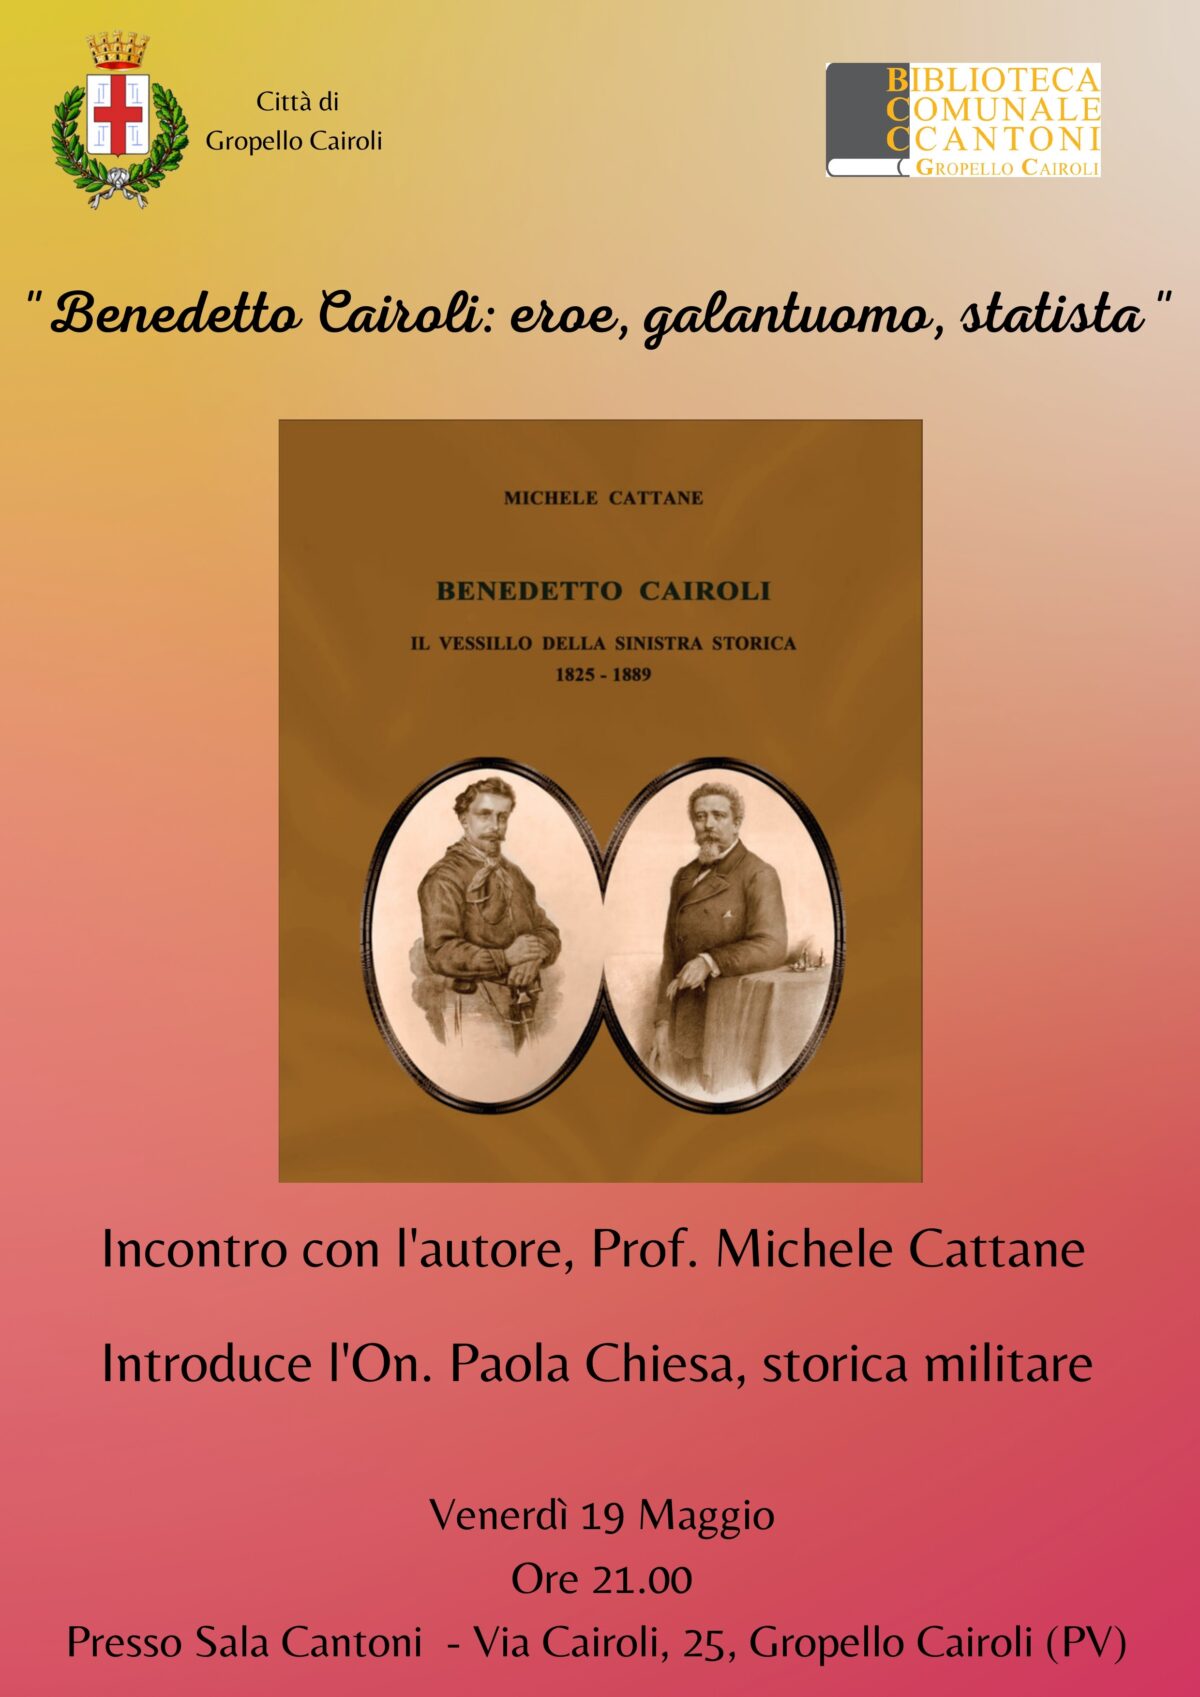 Venerdì 19 maggio ore 21,00 presentazione del libro “Benedetto Cairoli: il vessillo della Sinistra Storica” a cura dell’autore, il Prof. Michele Cattane